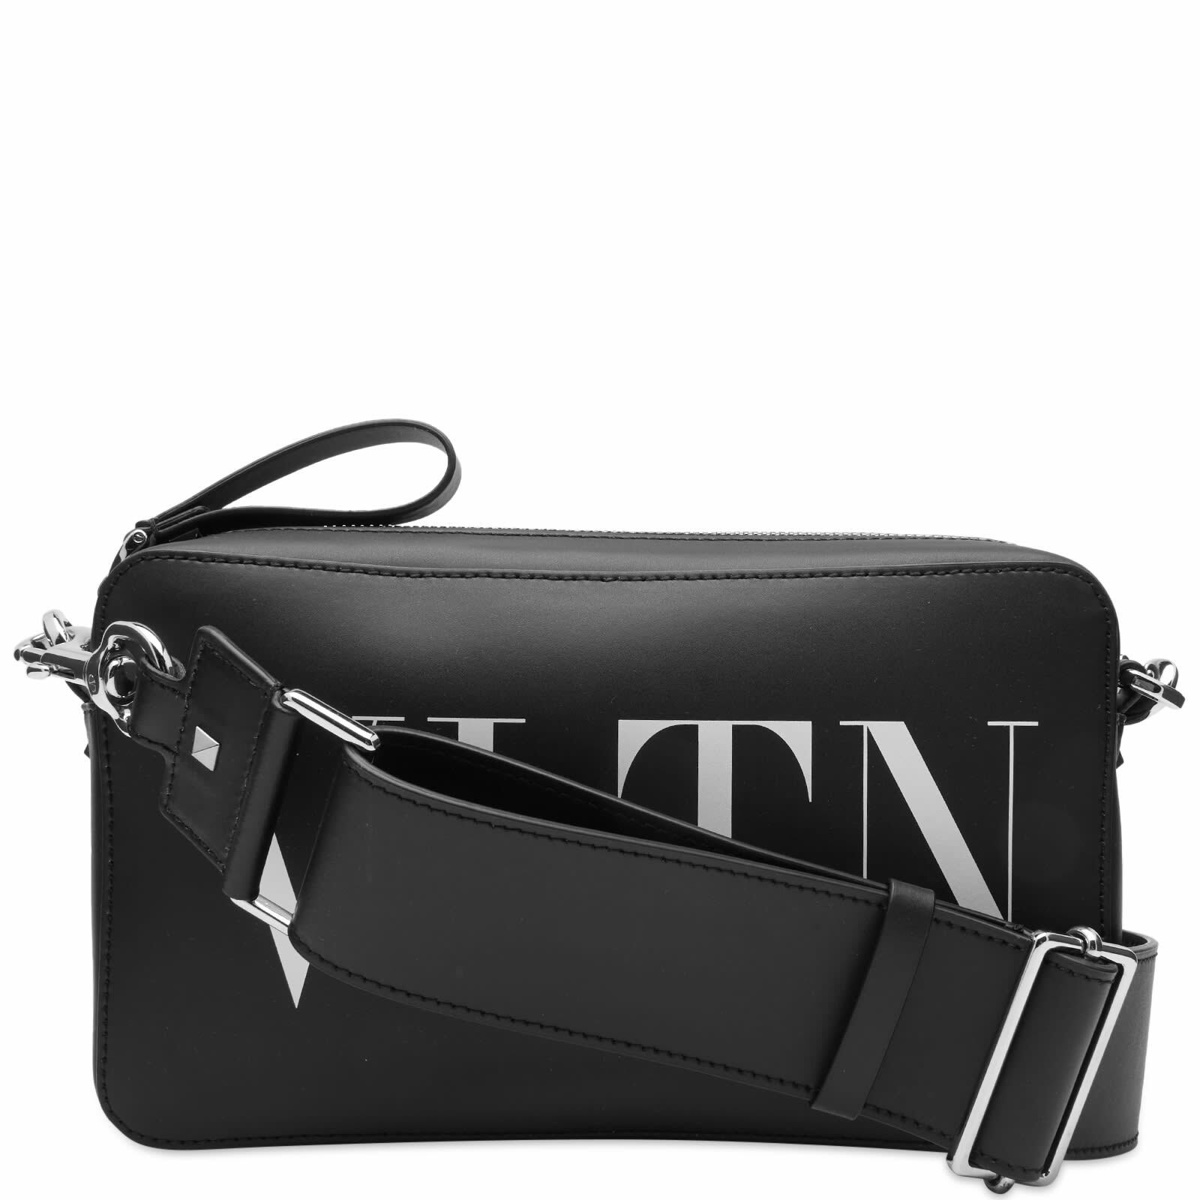 Valentino Men's VLTN Cross Body Bag in Black/White Valentino